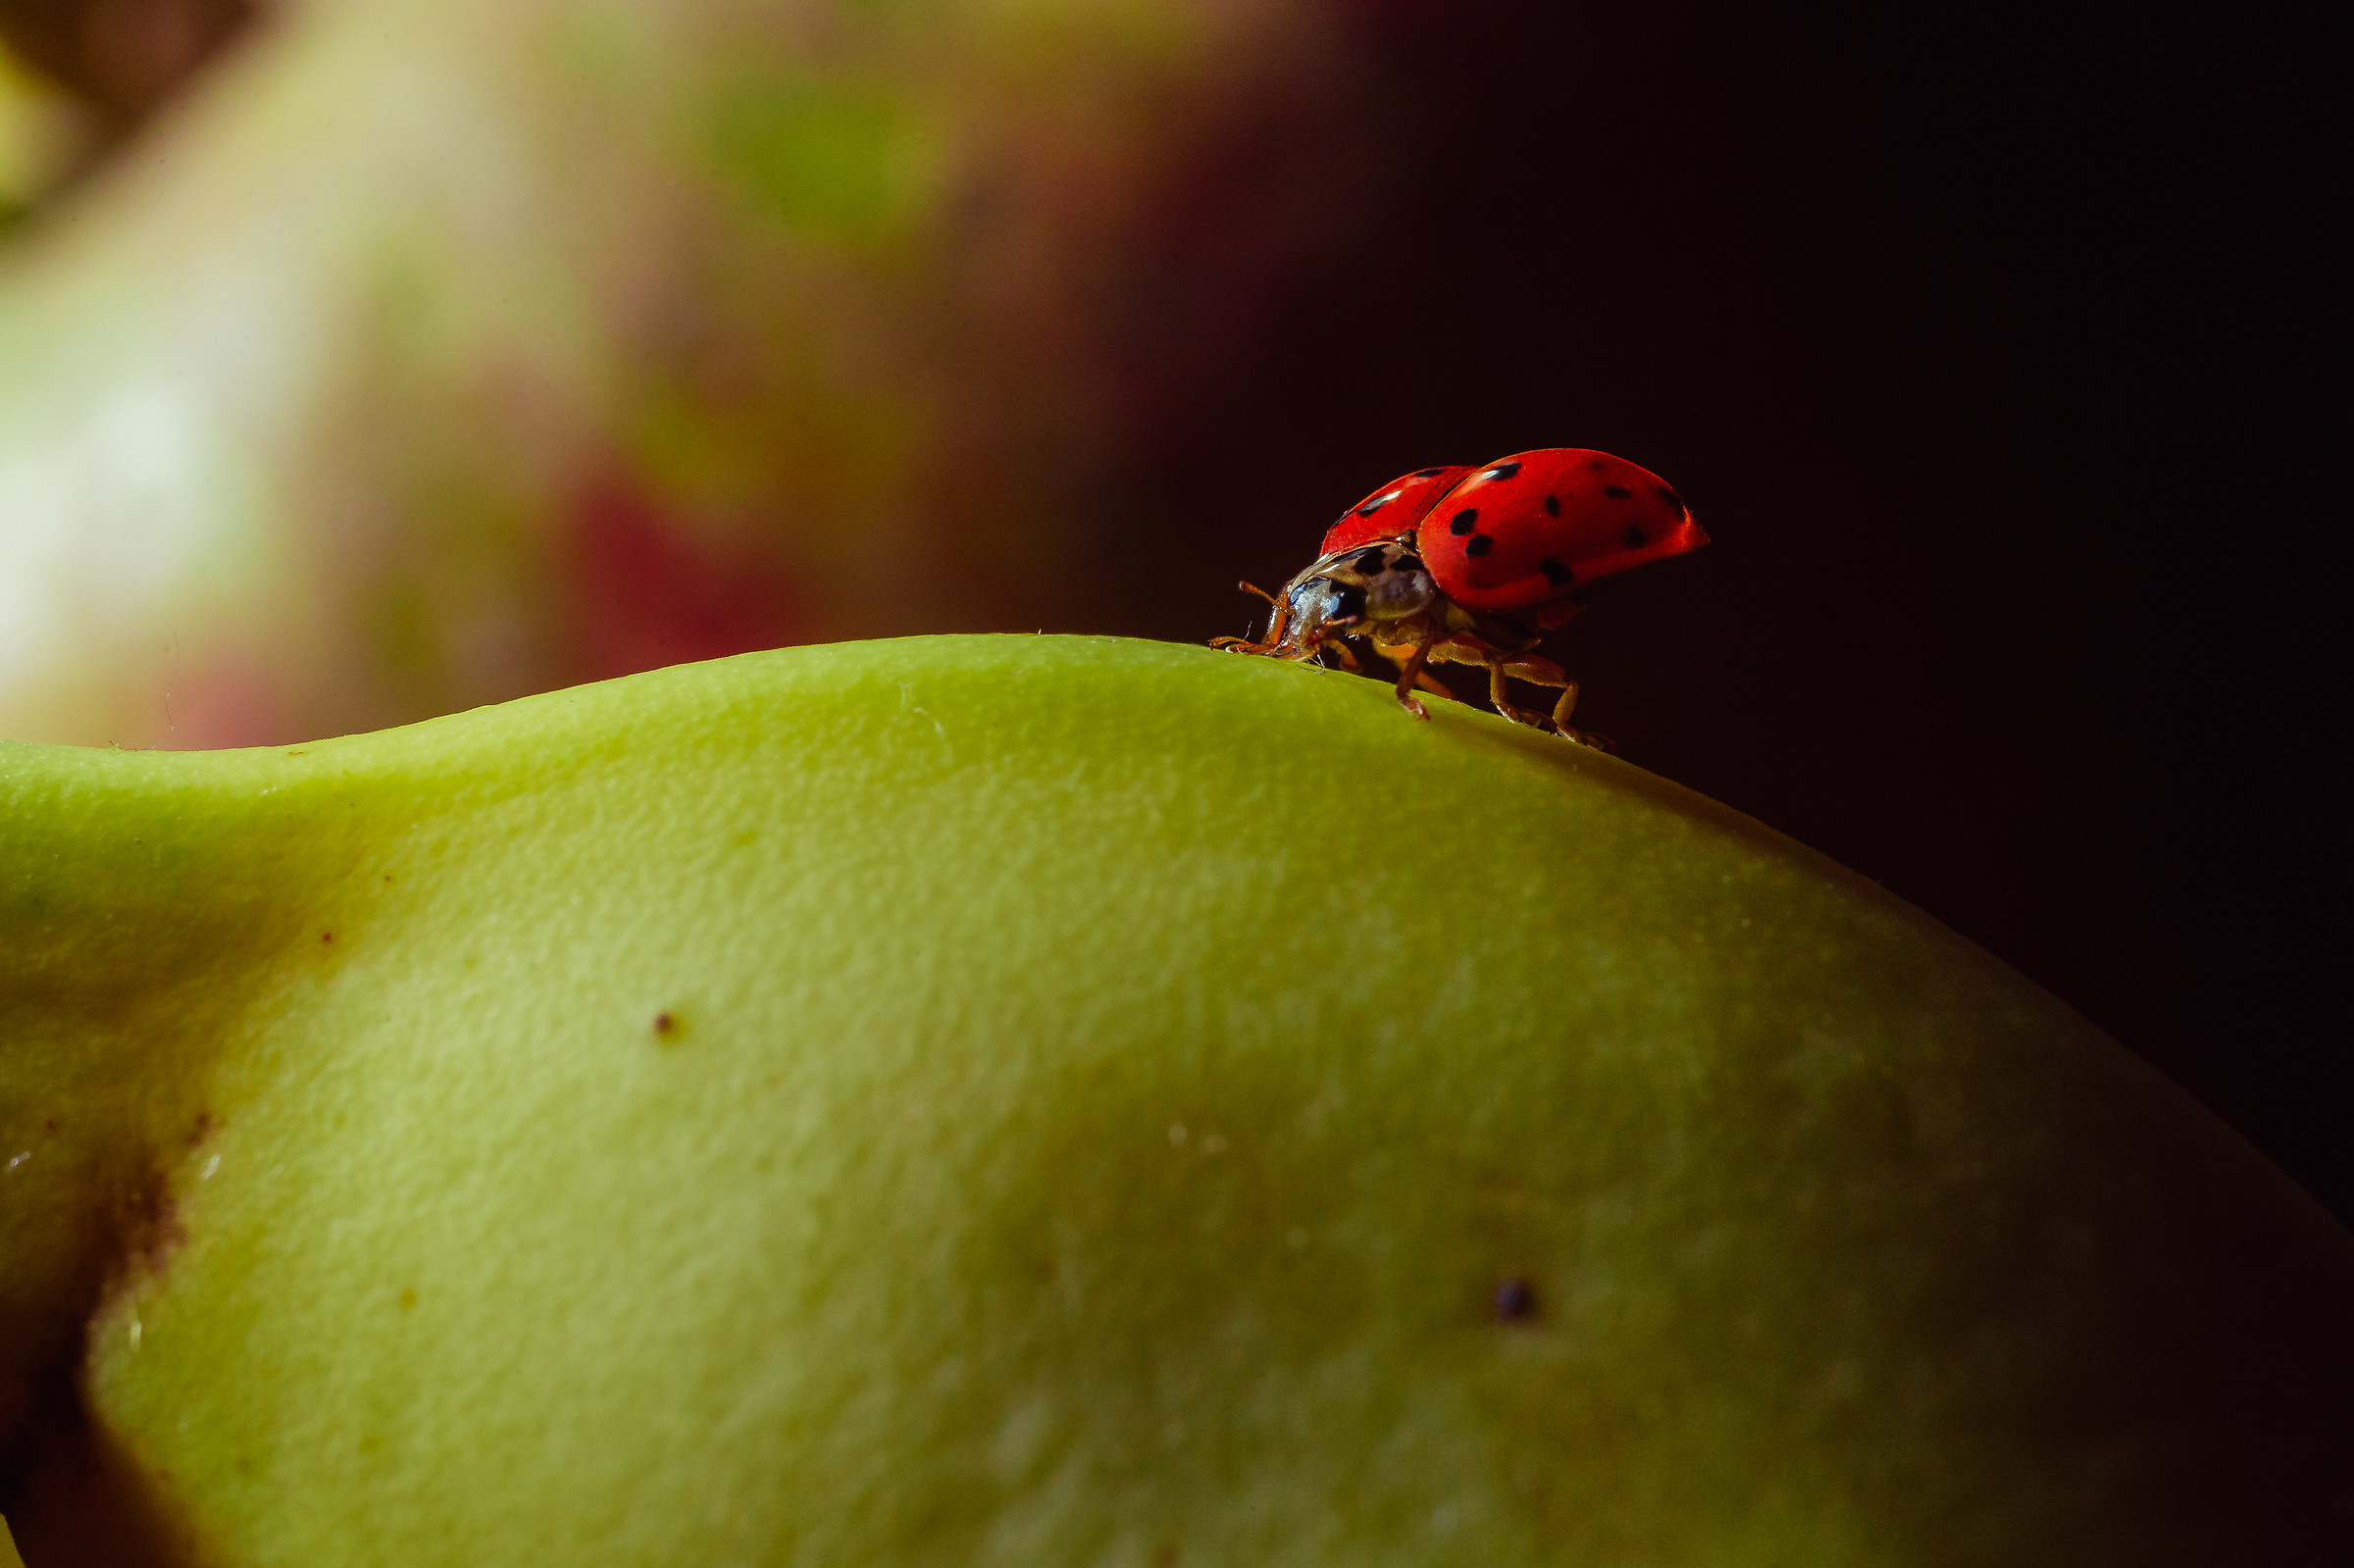 ladybug on an immature banana...